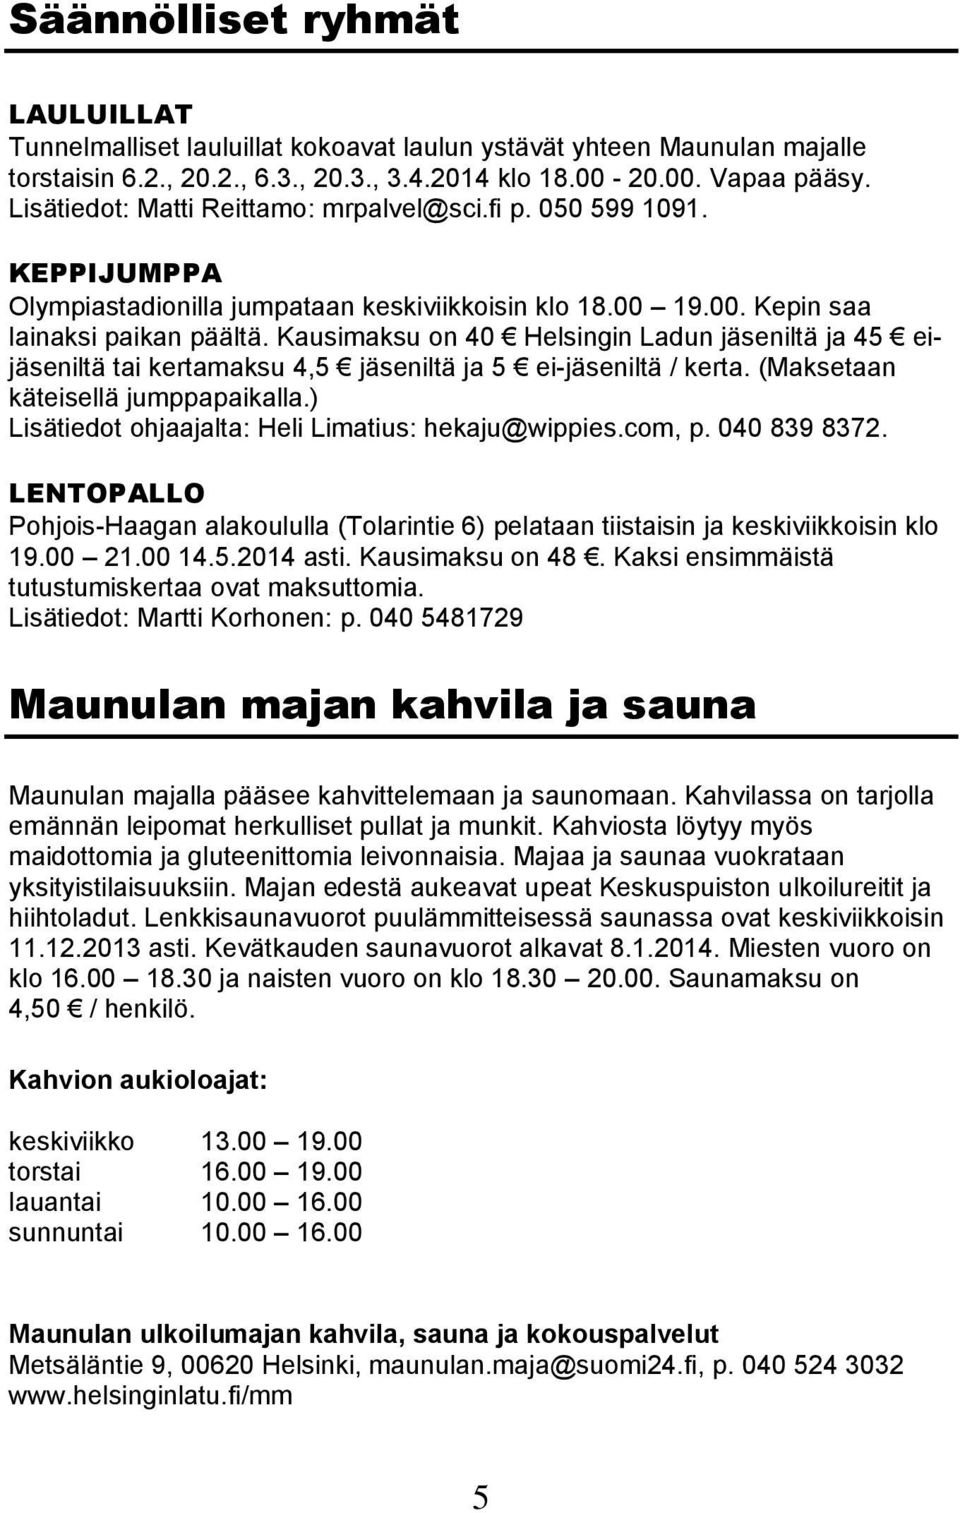 Kausimaksu on 40 Helsingin Ladun jäseniltä ja 45 eijäseniltä tai kertamaksu 4,5 jäseniltä ja 5 ei-jäseniltä / kerta. (Maksetaan käteisellä jumppapaikalla.